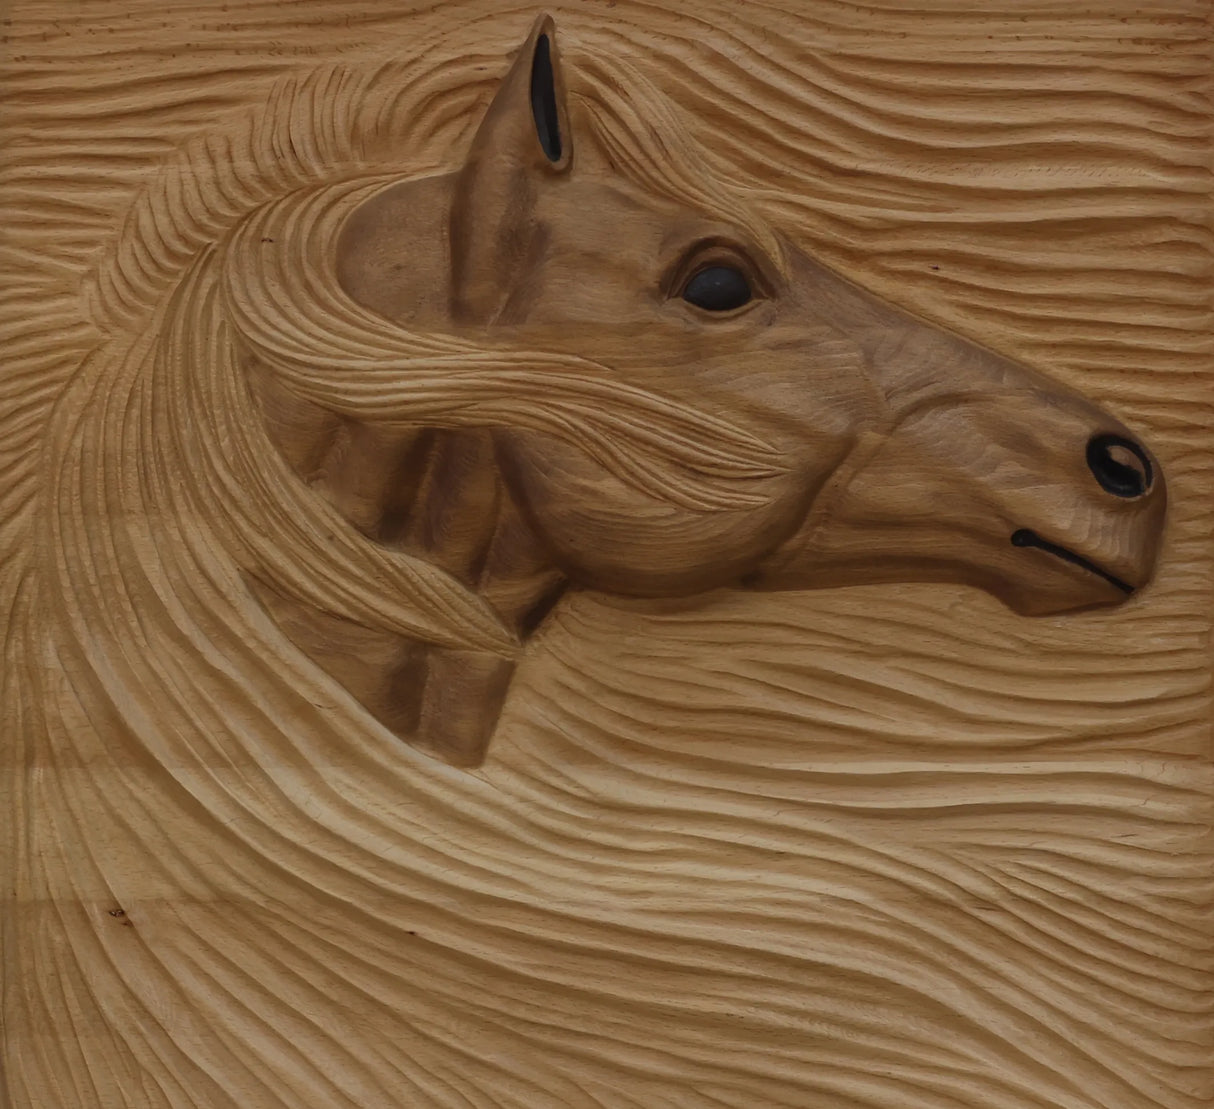 Wooden Wall Decor Horse 3D Wall Art Dubai